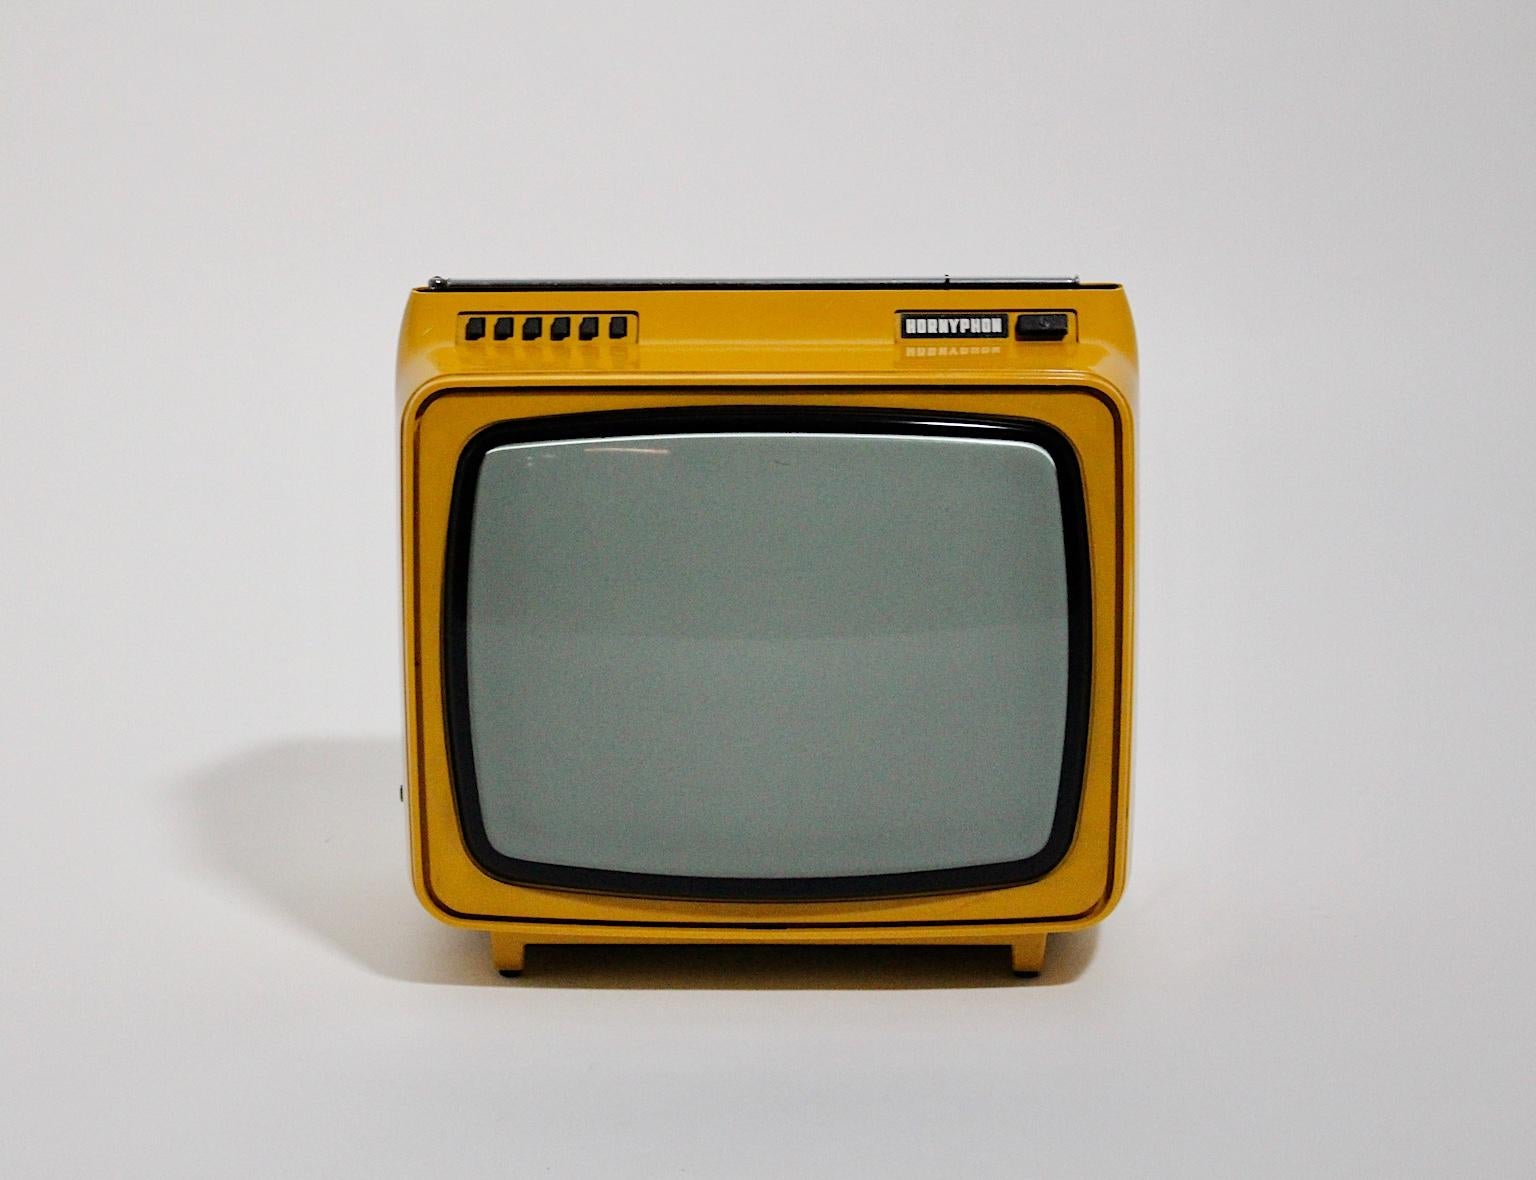 Télévision en plastique vintage jaune de l'ère spatiale, qui est portable. Le boîtier du téléviseur était en plastique jaune et est en très bon état, mais son fonctionnement n'est pas garanti.
Mesures approximatives :
Largeur 34 cm
Profondeur 26